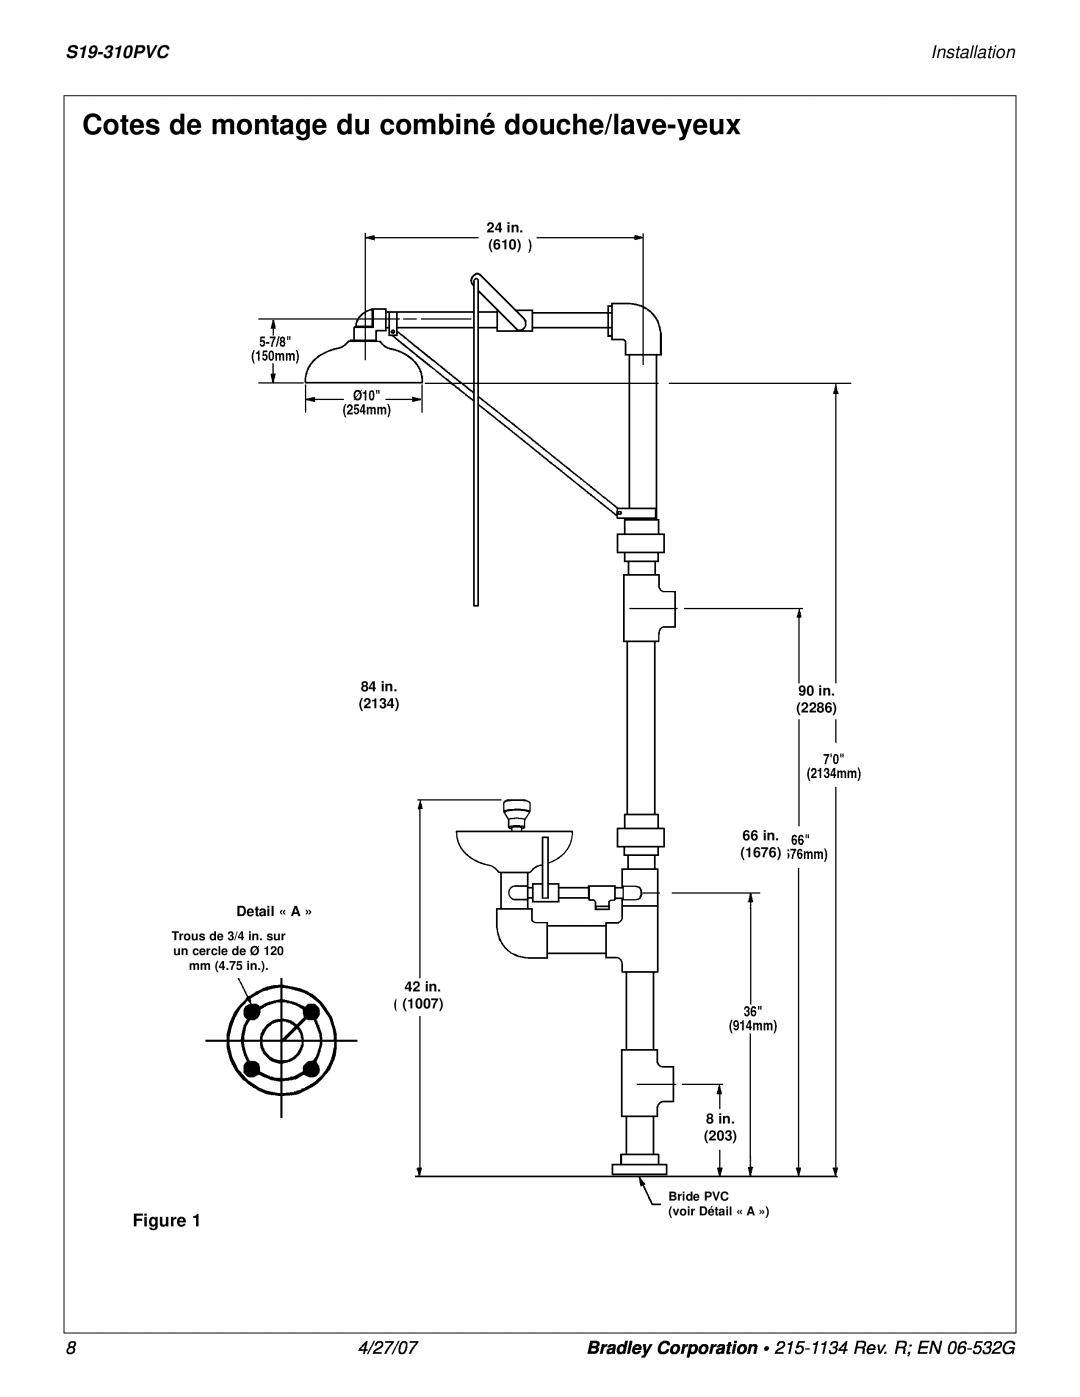 Bradley Smoker S19-310PVC Cotes de montage du combiné douche/lave-yeux, Installation, 4/27/07, 42 in 